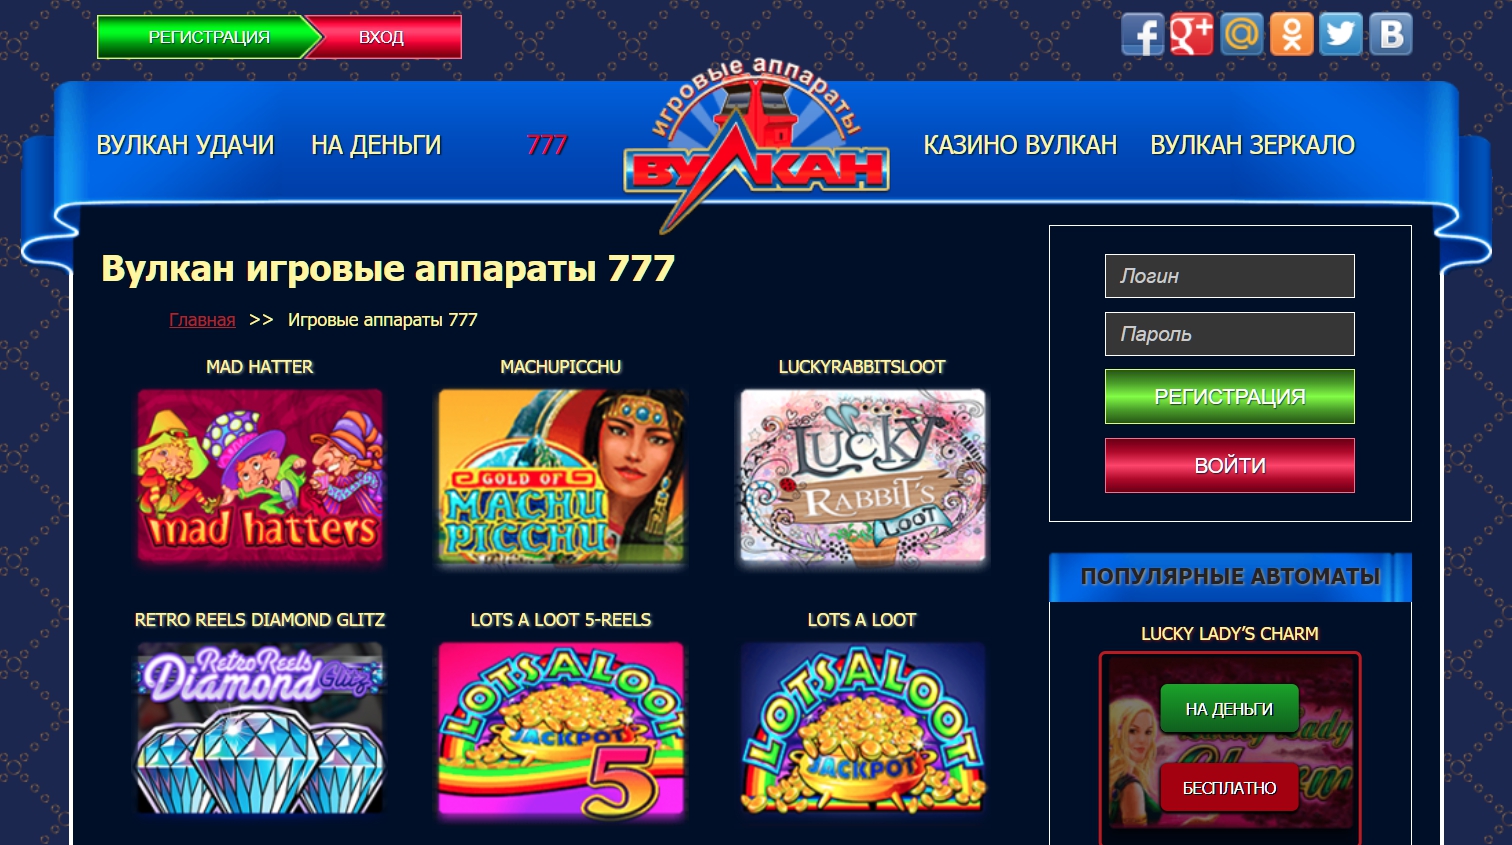 Онлайн казино вулкан 777 вулкан интернет казино отзывы